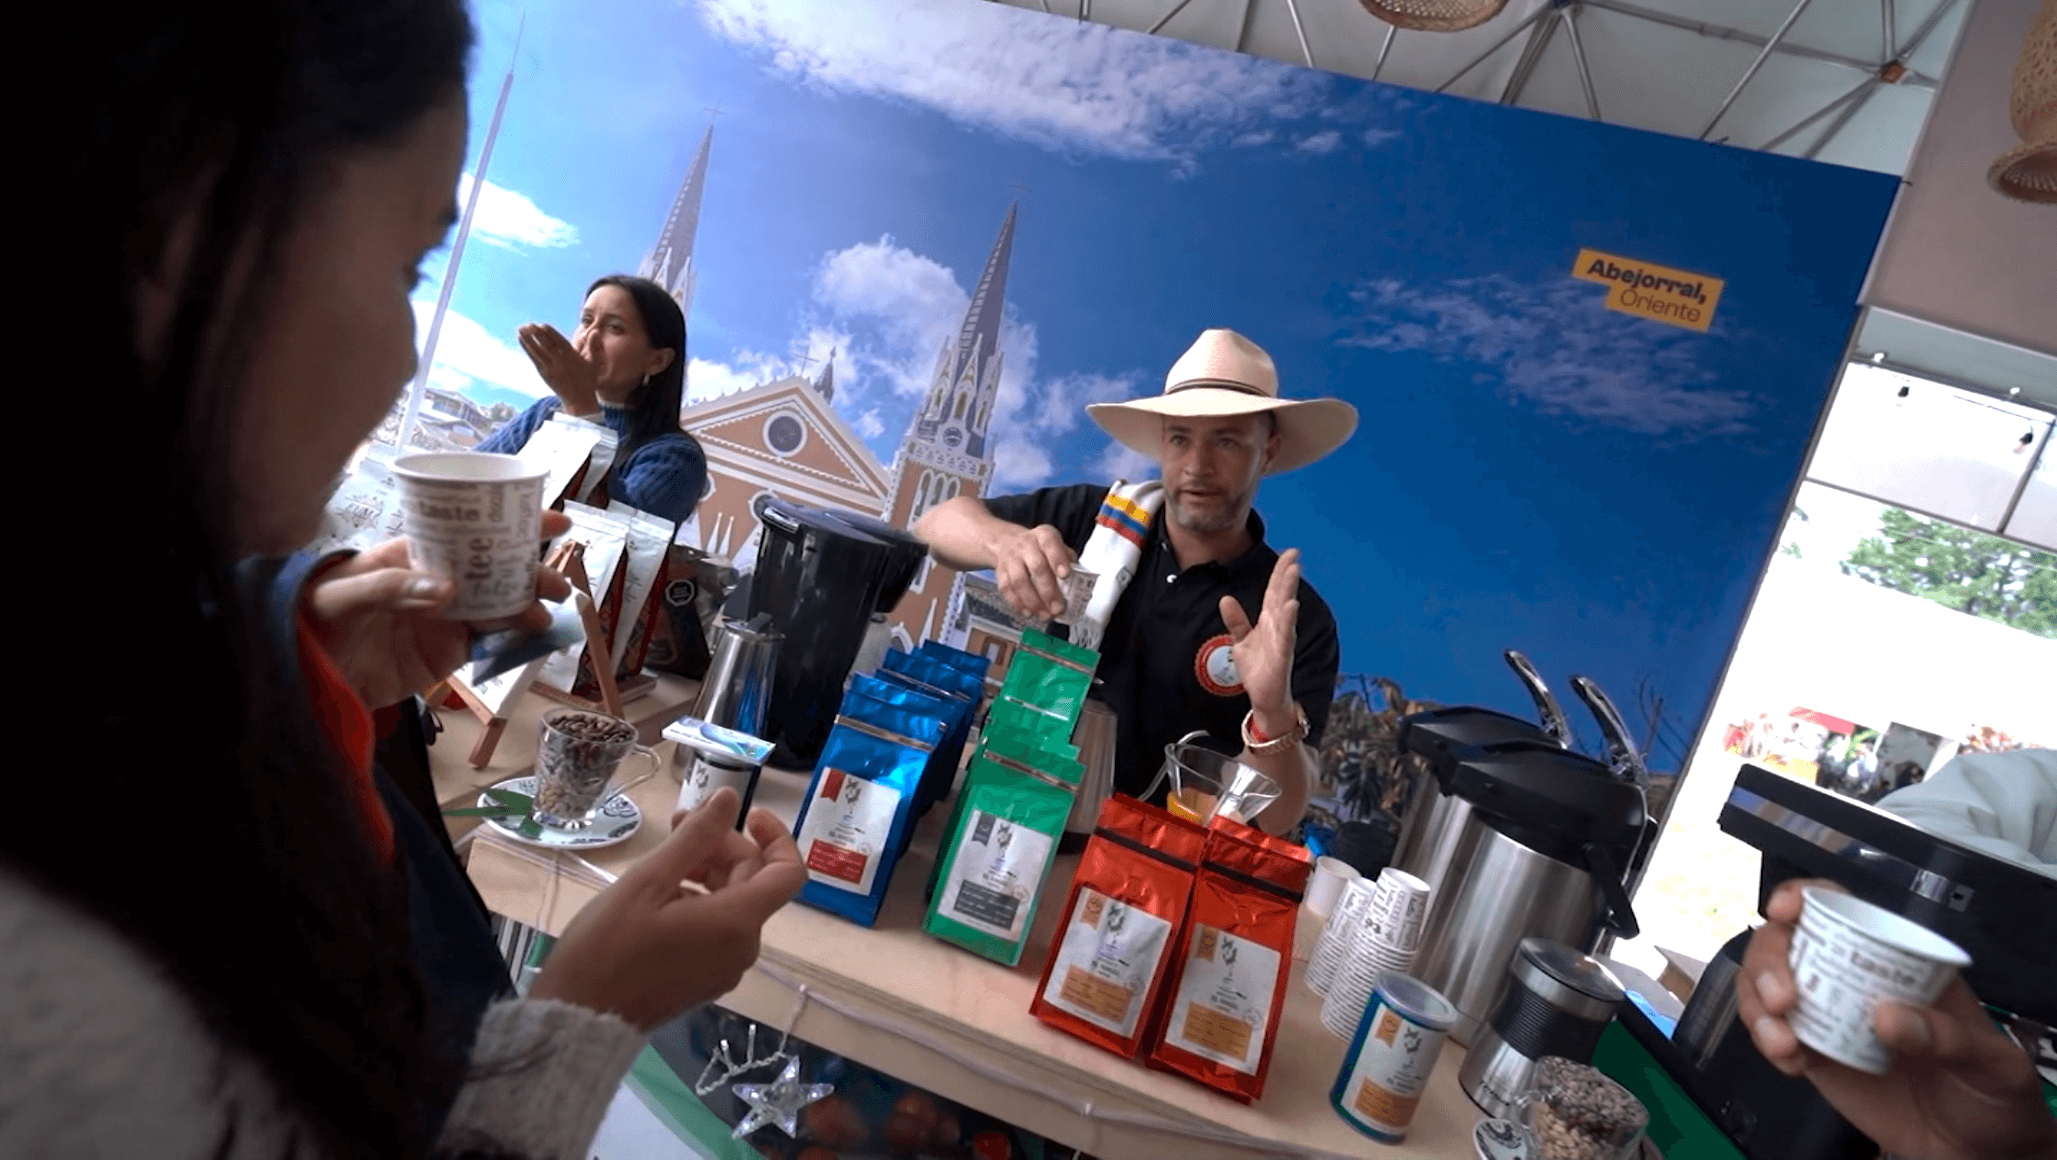 Caféstival busca internacionalizar el café